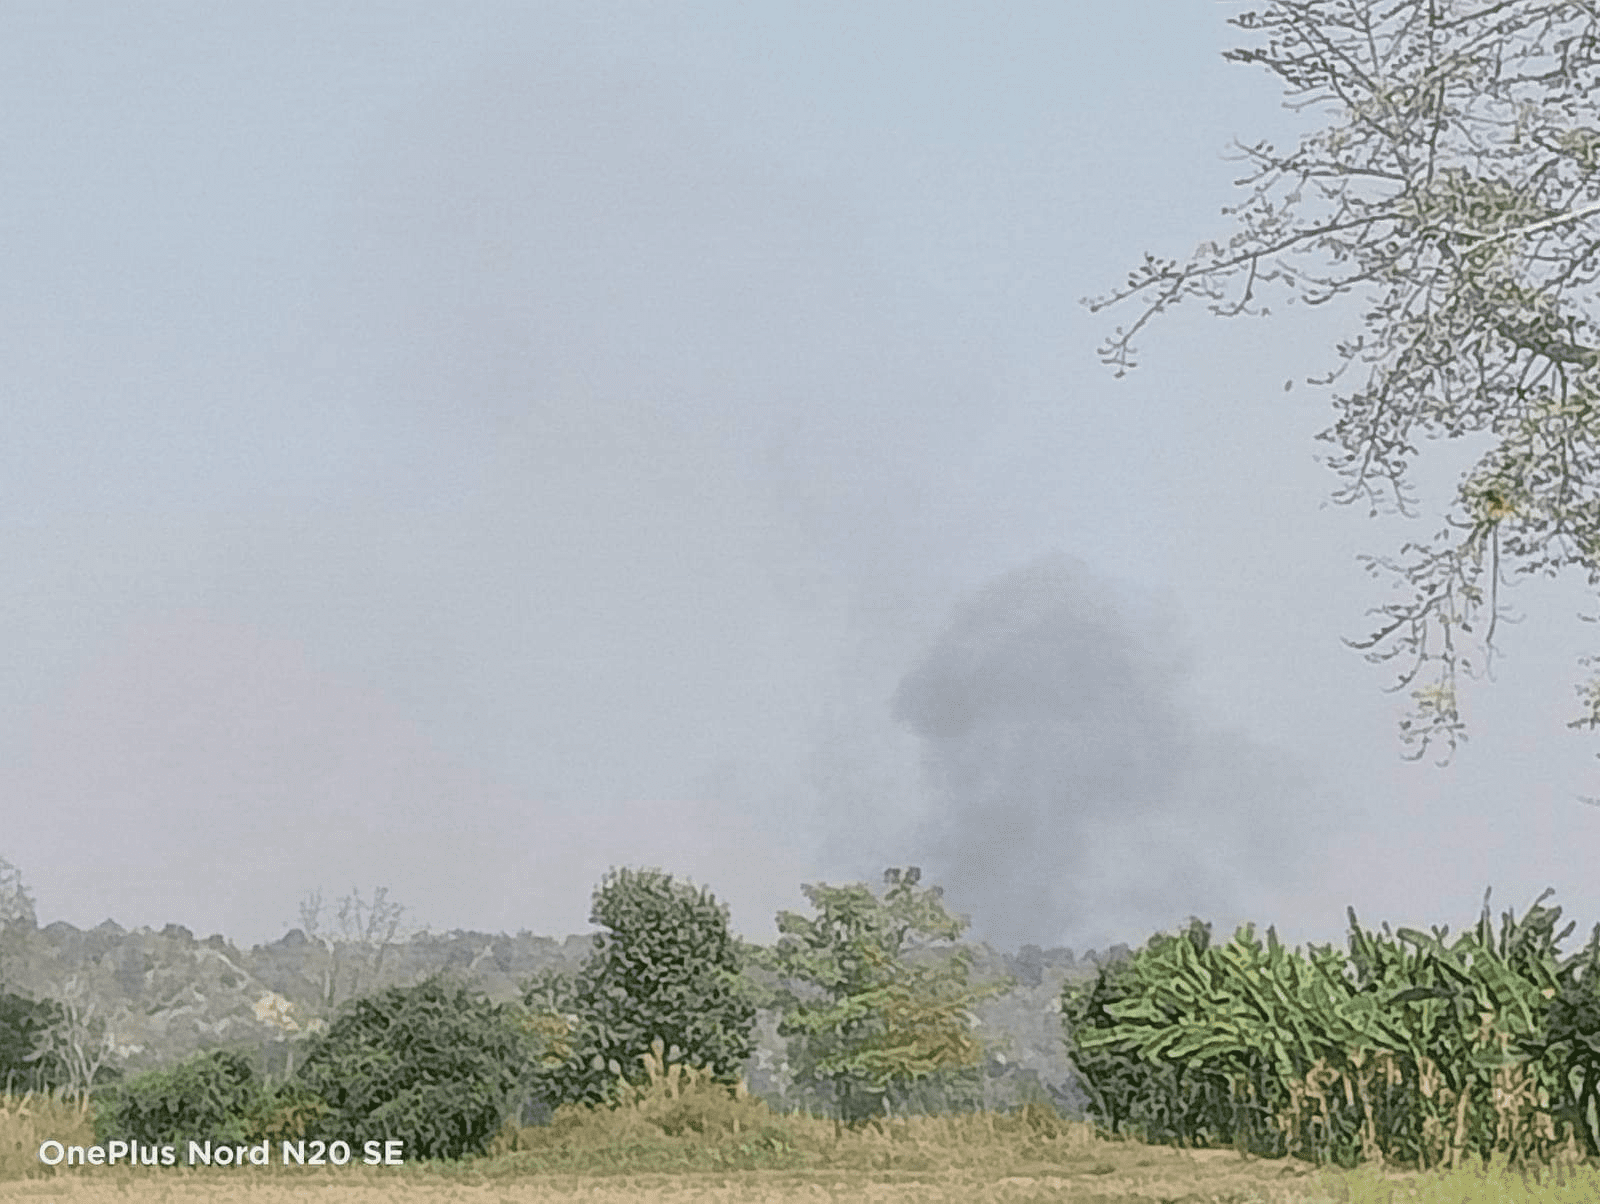 ပေါက်မြို့နယ်ထဲက အုံးတောရွာကို စစ်ကောင်စီတပ်တွေ အကြိမ်ကြိမ်မီးရှို့ဖျက်ဆီး